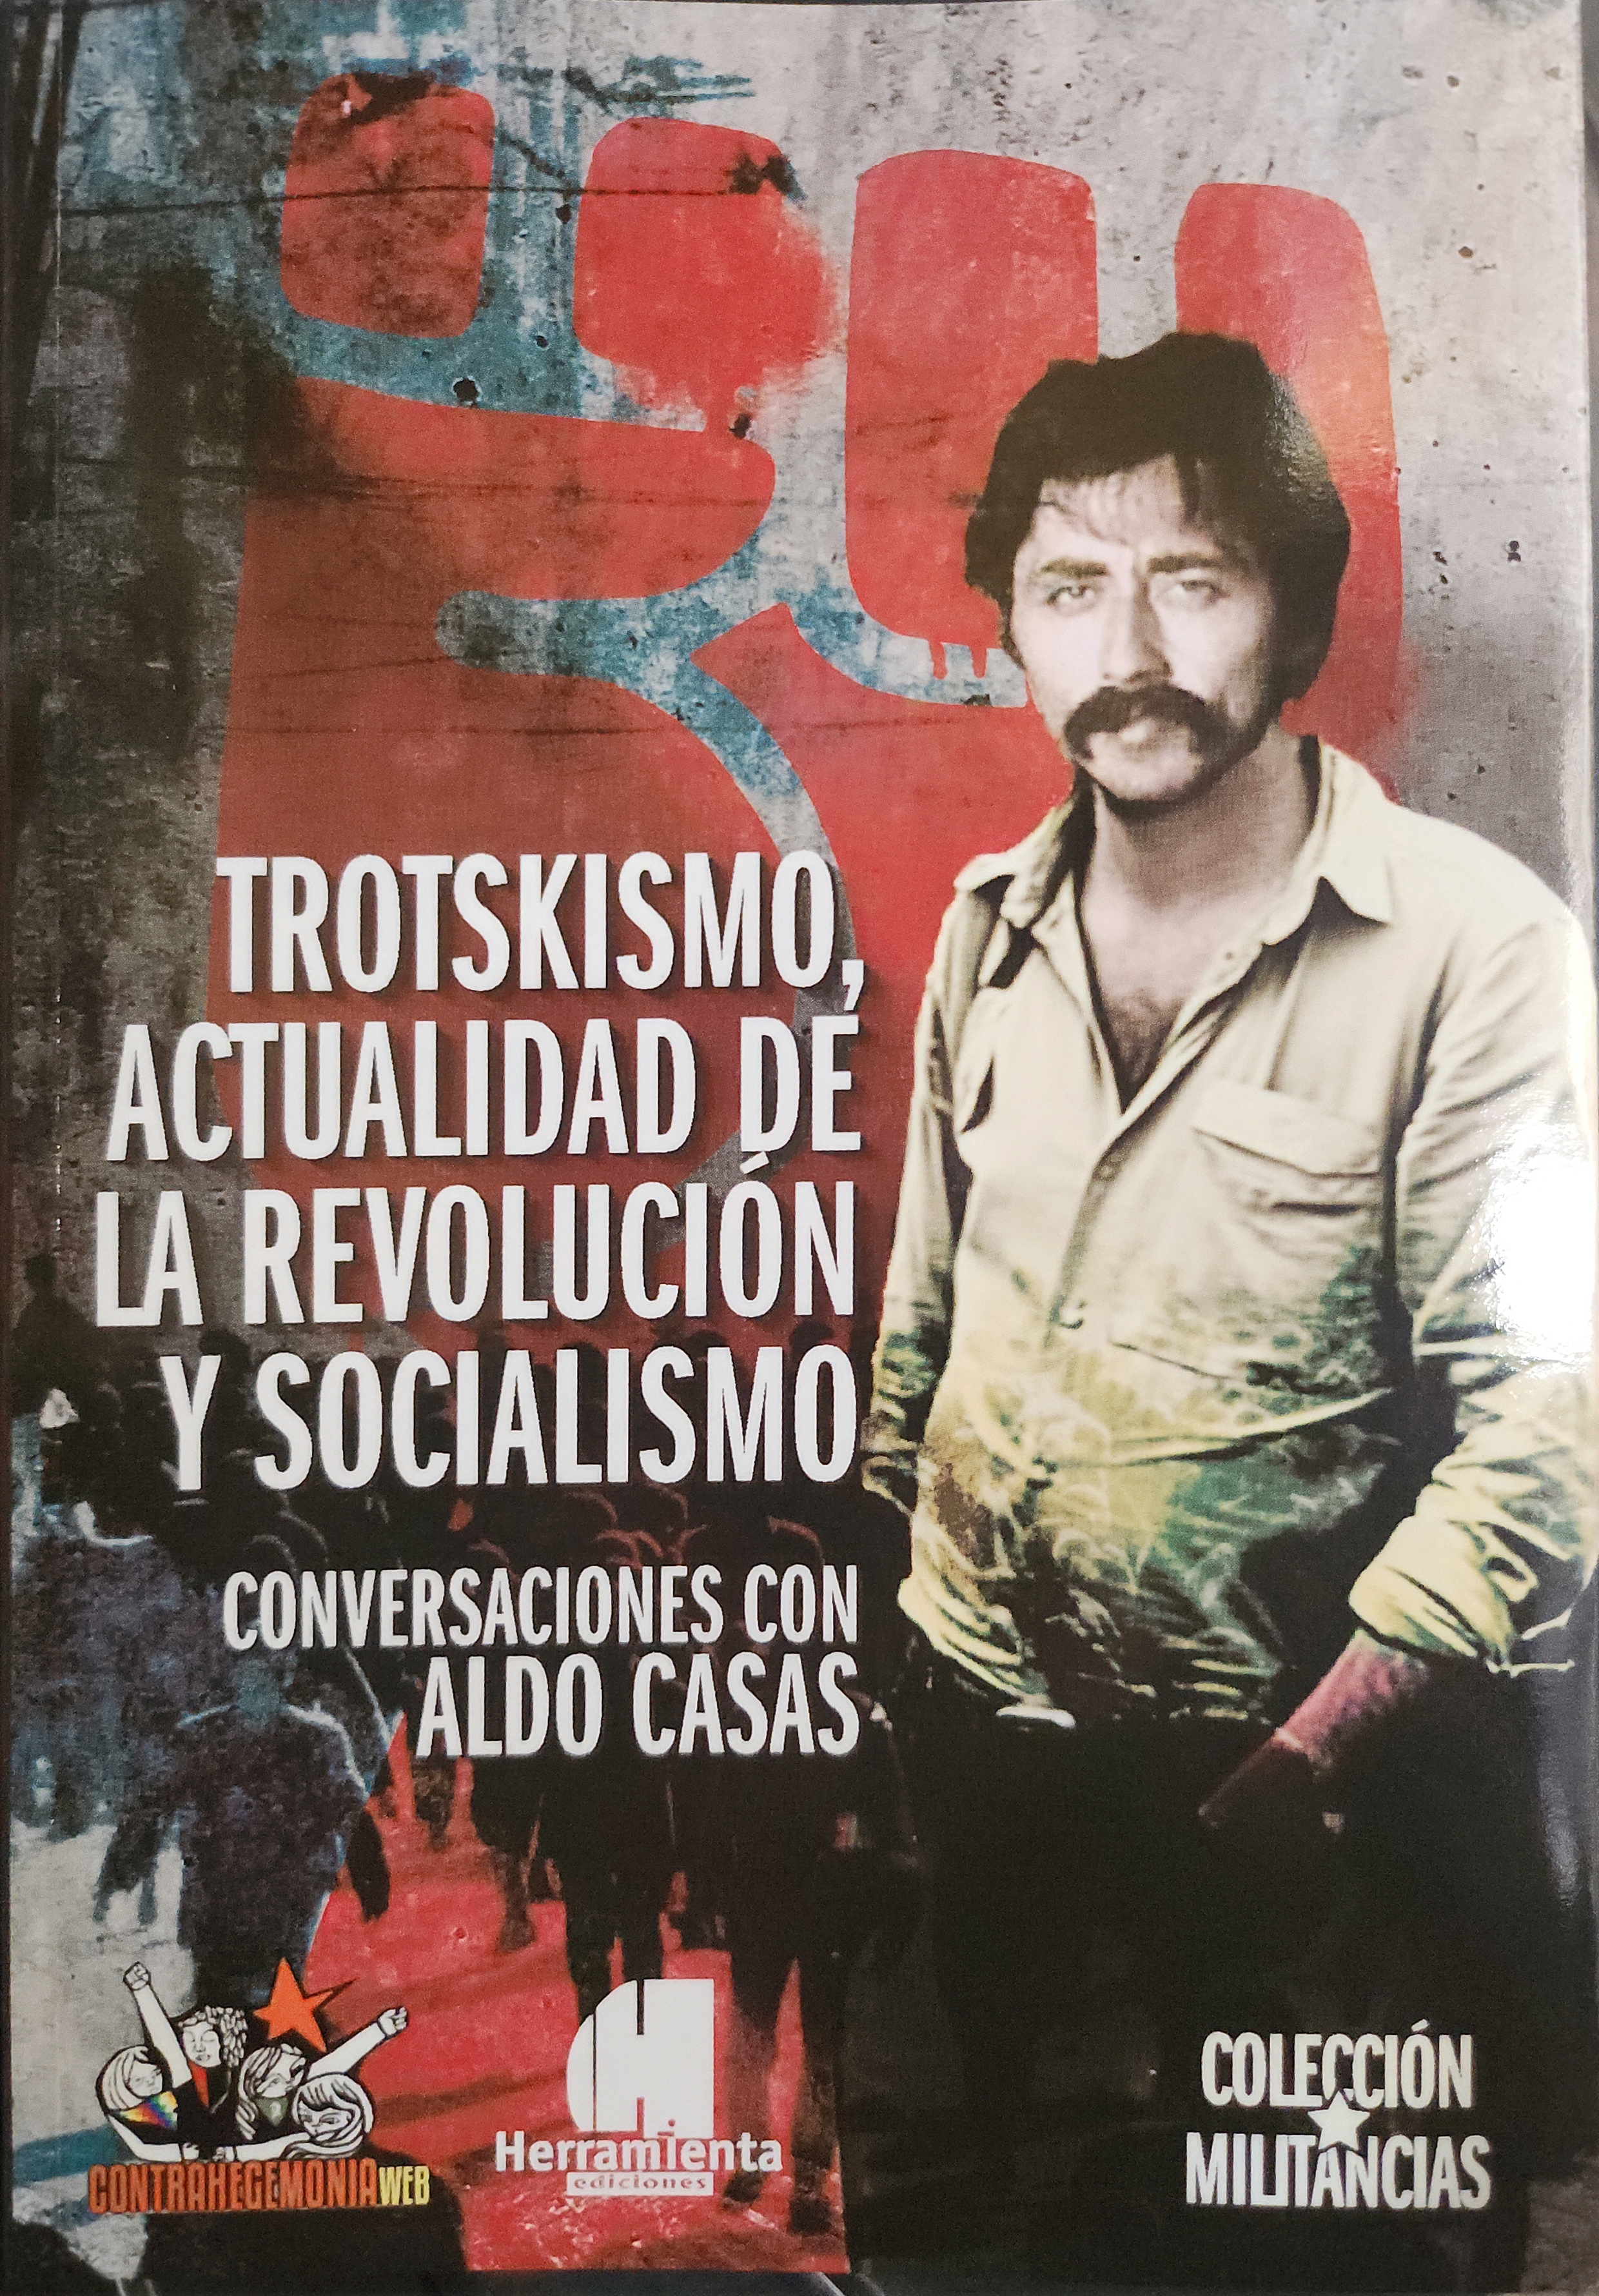 TROTSKISMO, ACTUALIDAD DE LA REVOLUCIÓN Y SOCIALISMO Conversaciones con Aldo Casas